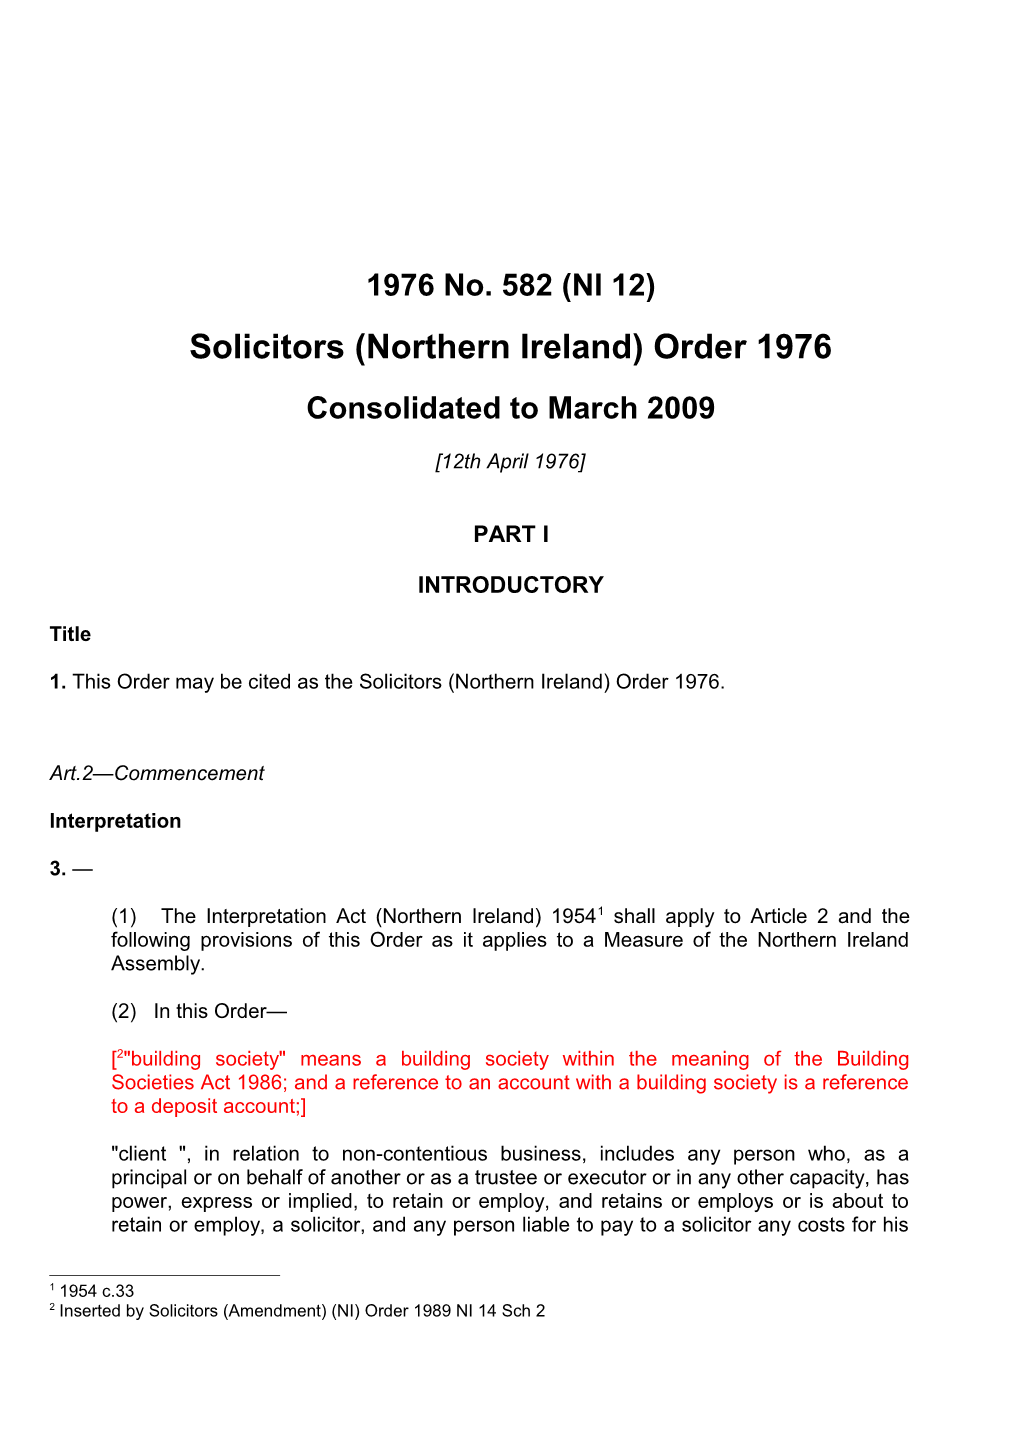 Solicitors Accounts Rules 1998